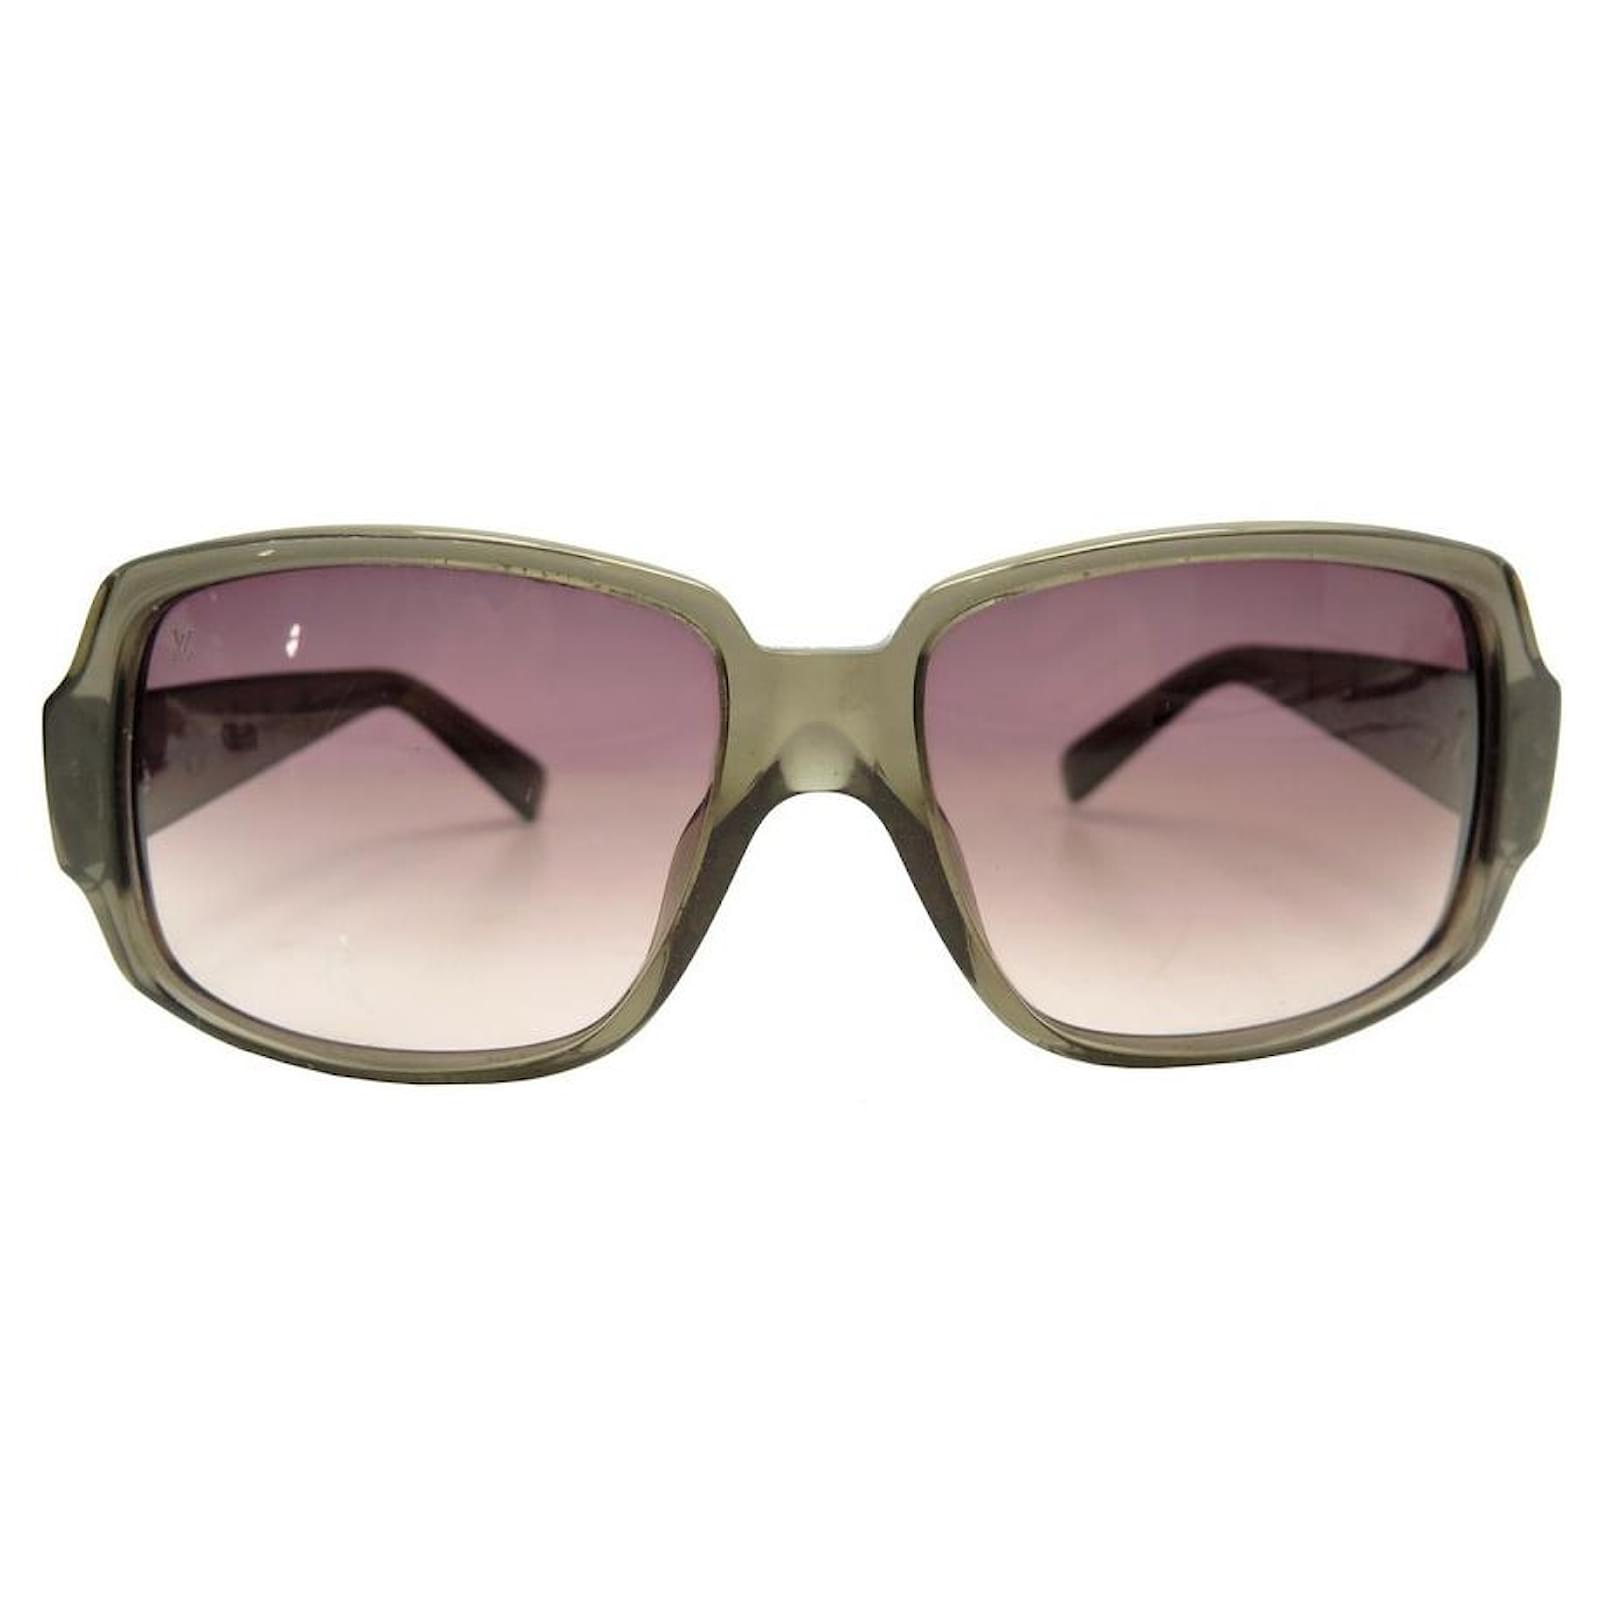 Louis Vuitton, Accessories, Louis Vuitton Sunglasses